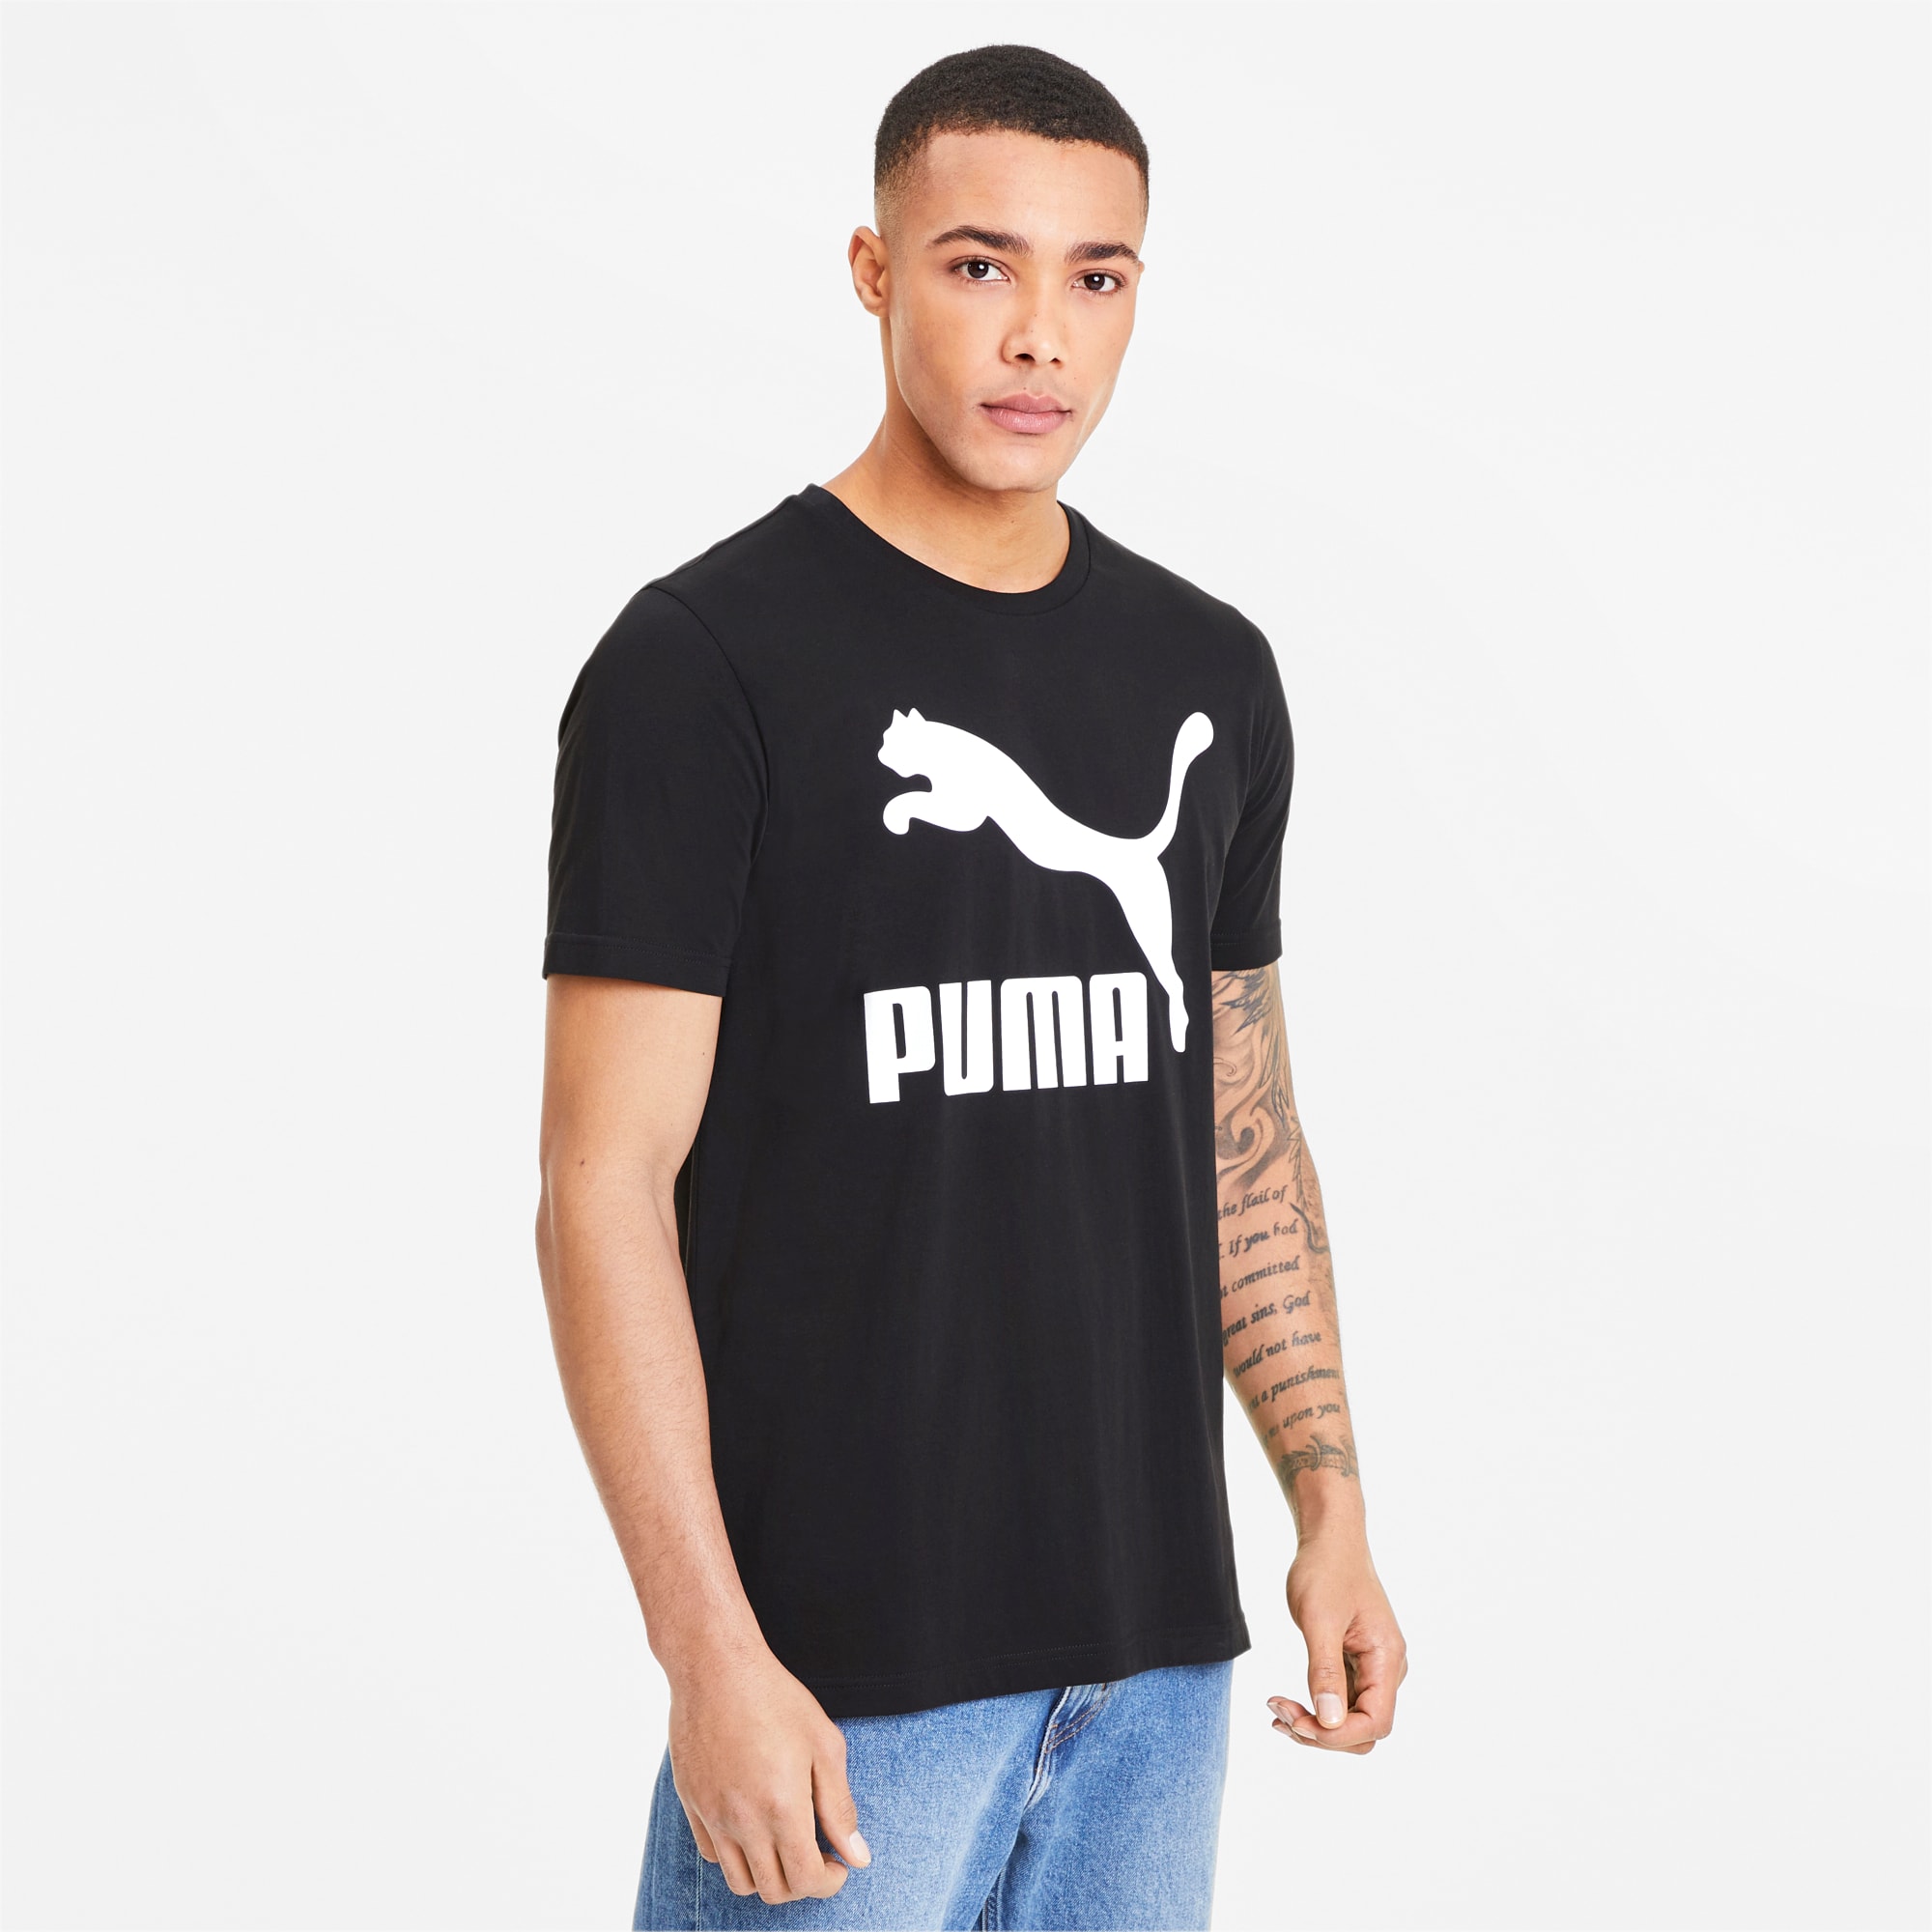 puma clothing for men